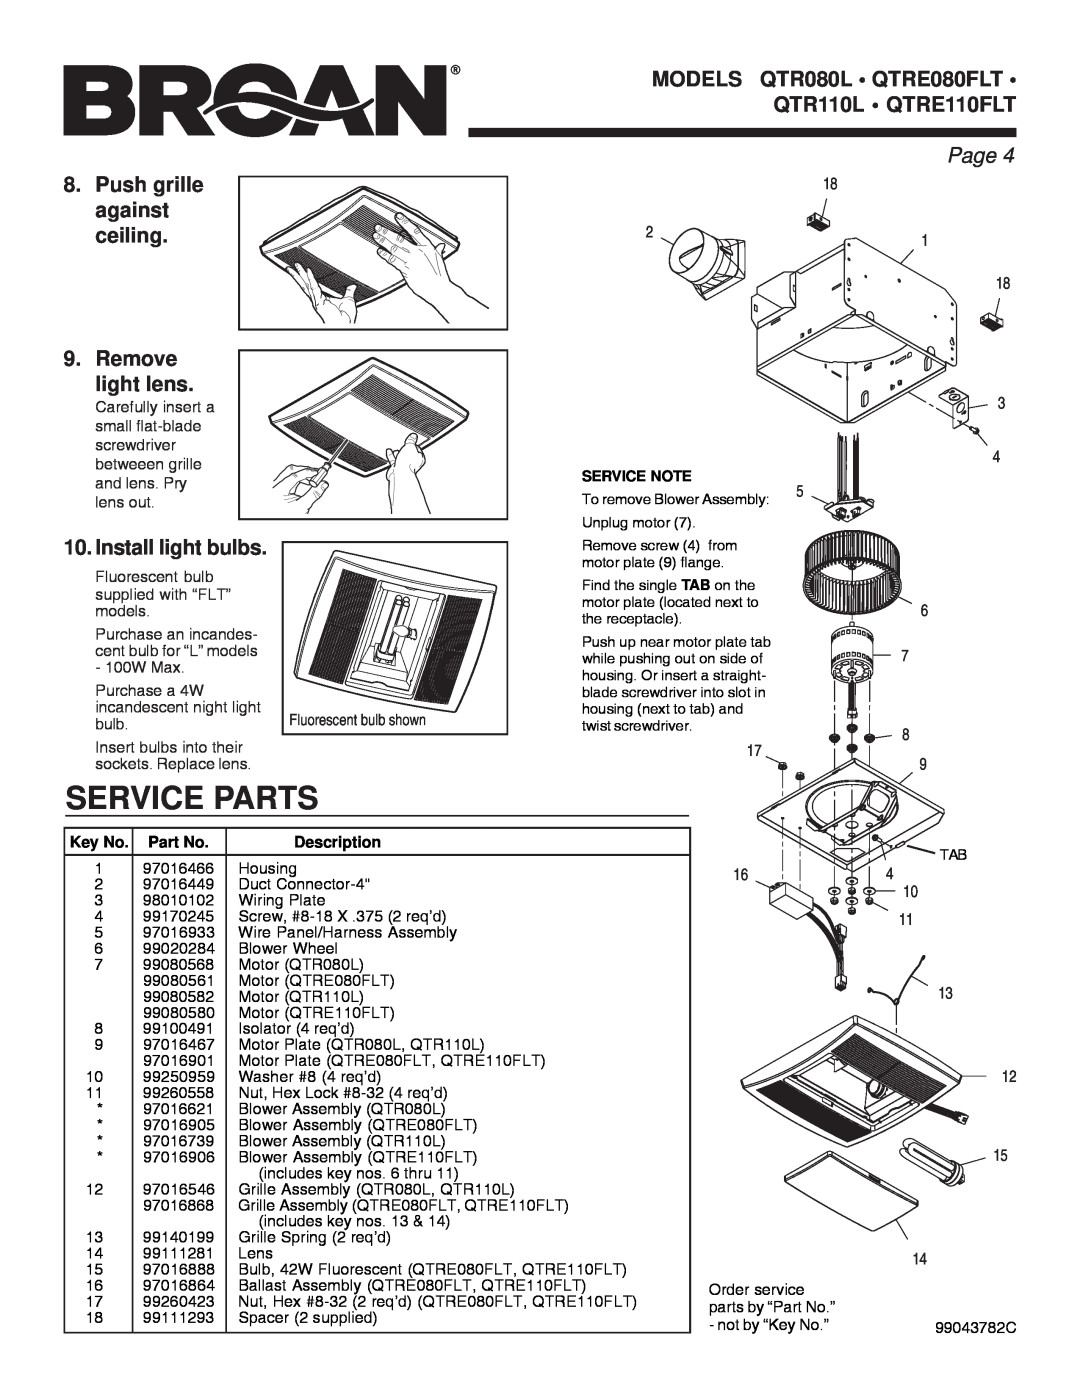 Broan QTRE110FLT, QTRE080FLT, QTR110L manual Service Parts, Page, Key No. Part No, Description 